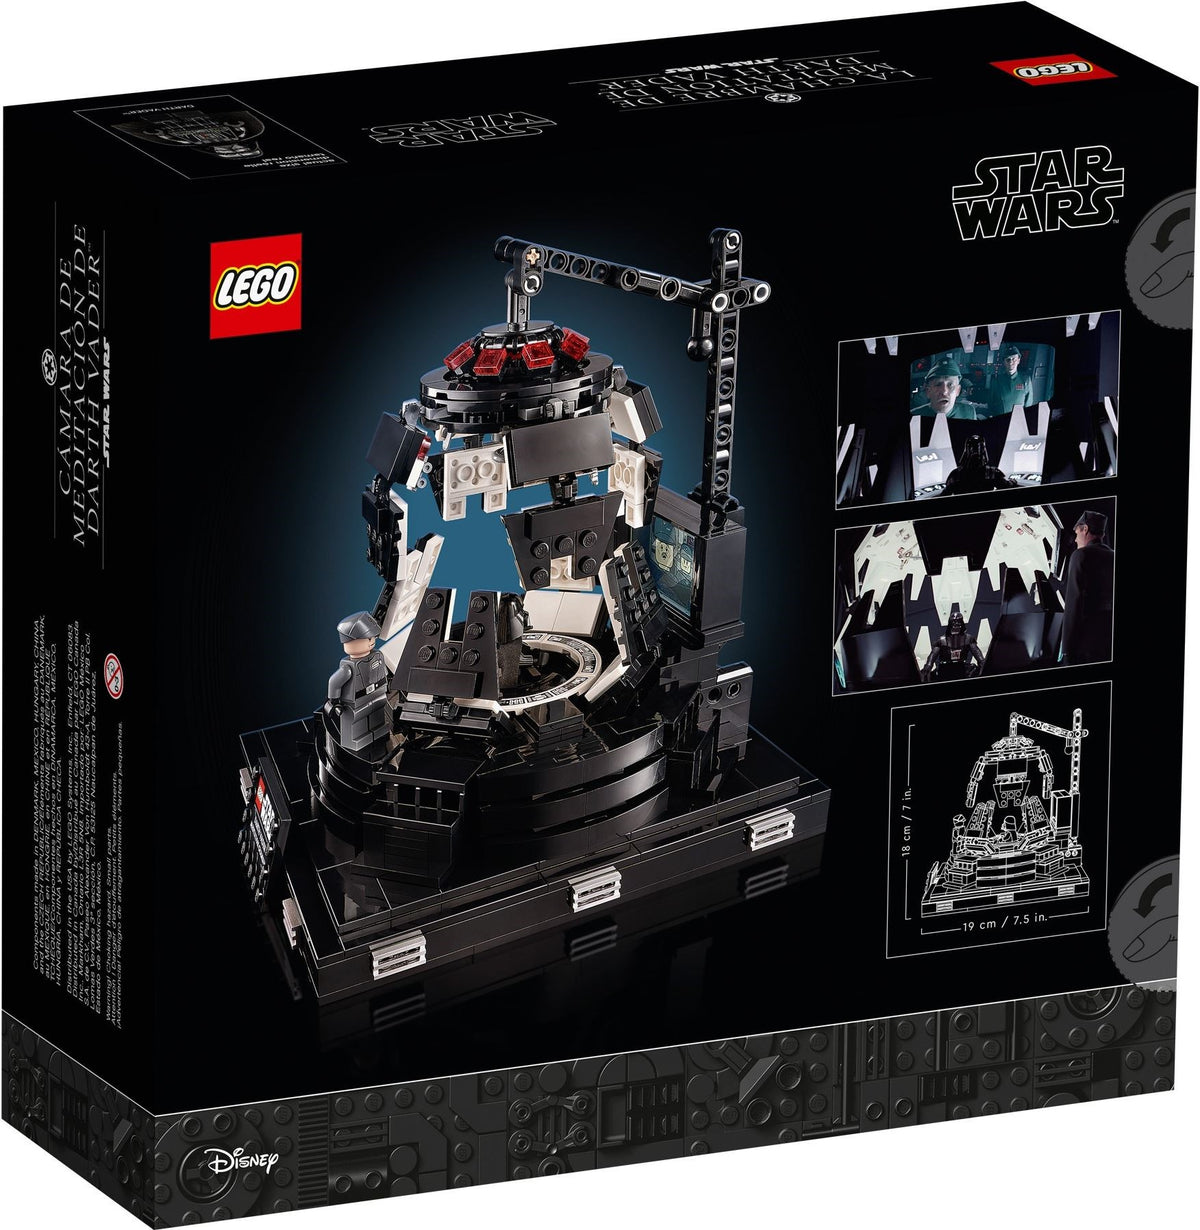 LEGO Star Wars 75296 Darth Vader Meditationskammer